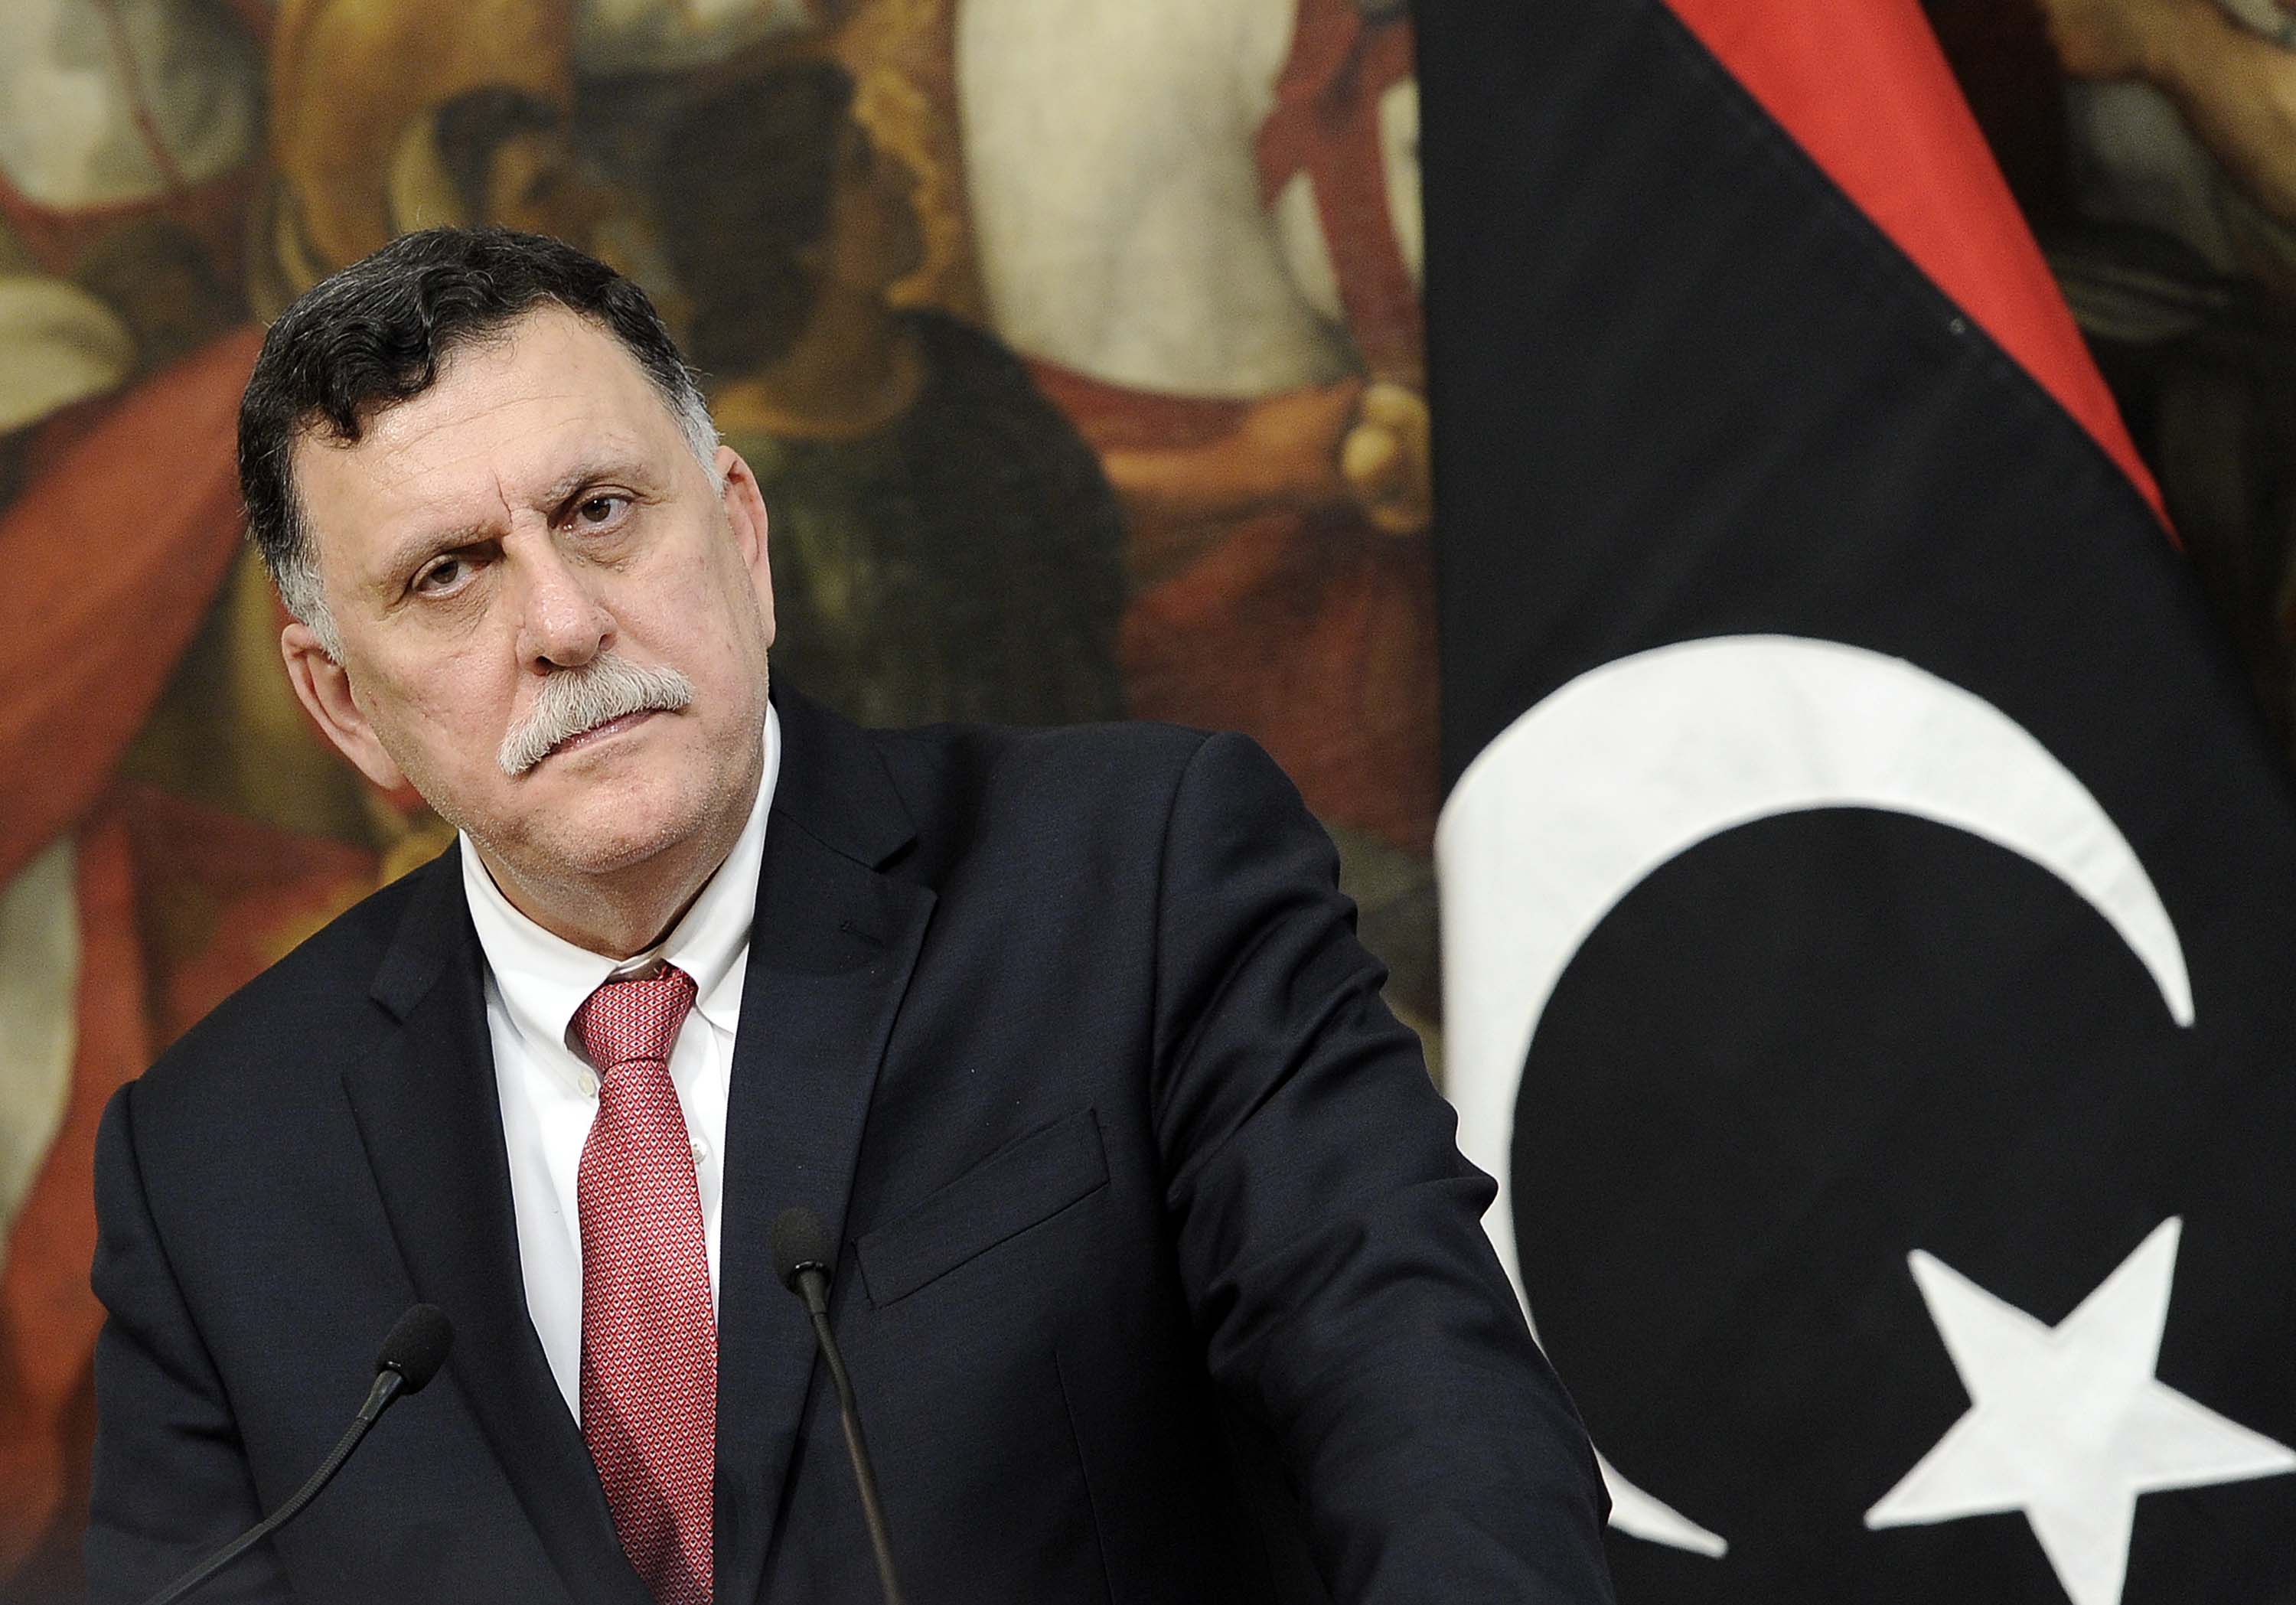 Risultati immagini per immagine di al serray, leader libico